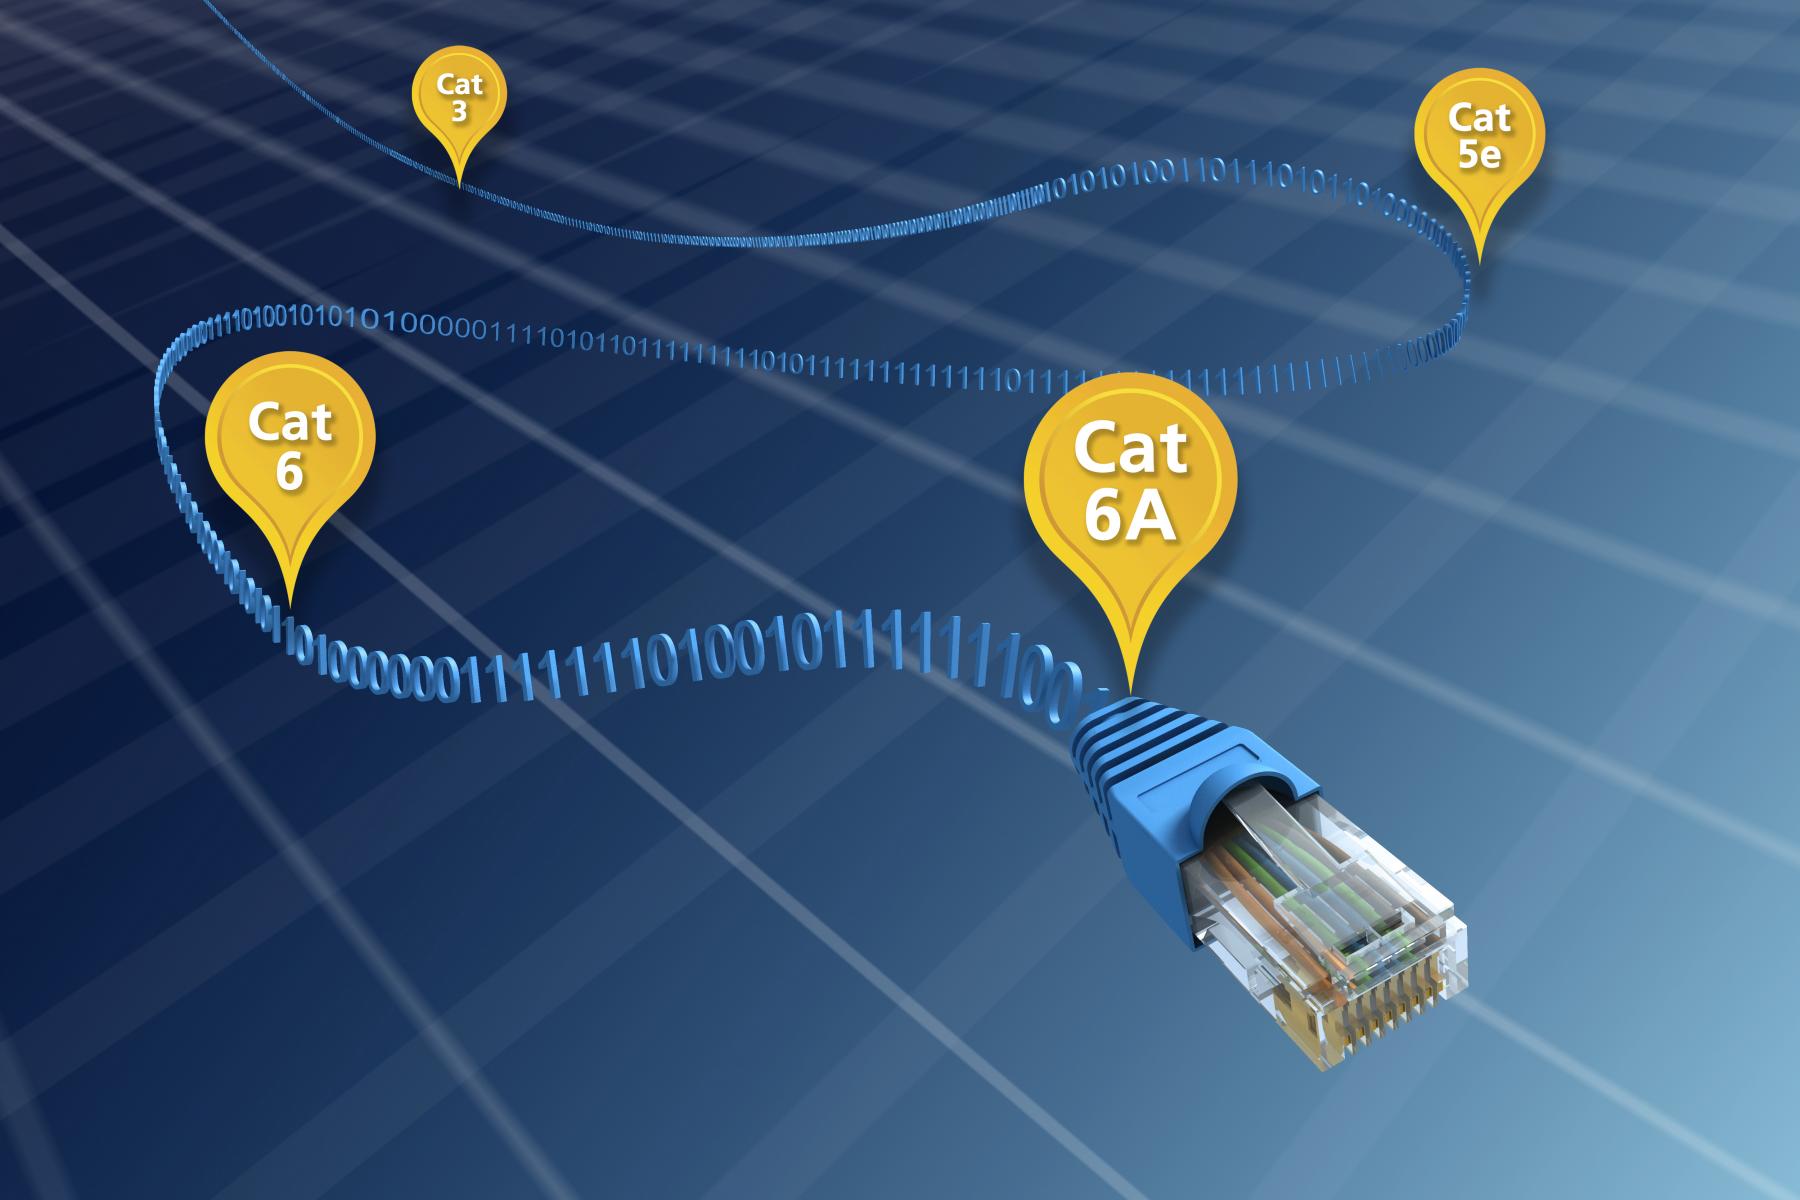 Un cable azul marcado con etiquetas amarillas ilustra la evolución del cable Ethernet de Cat 3 a Cat 6A